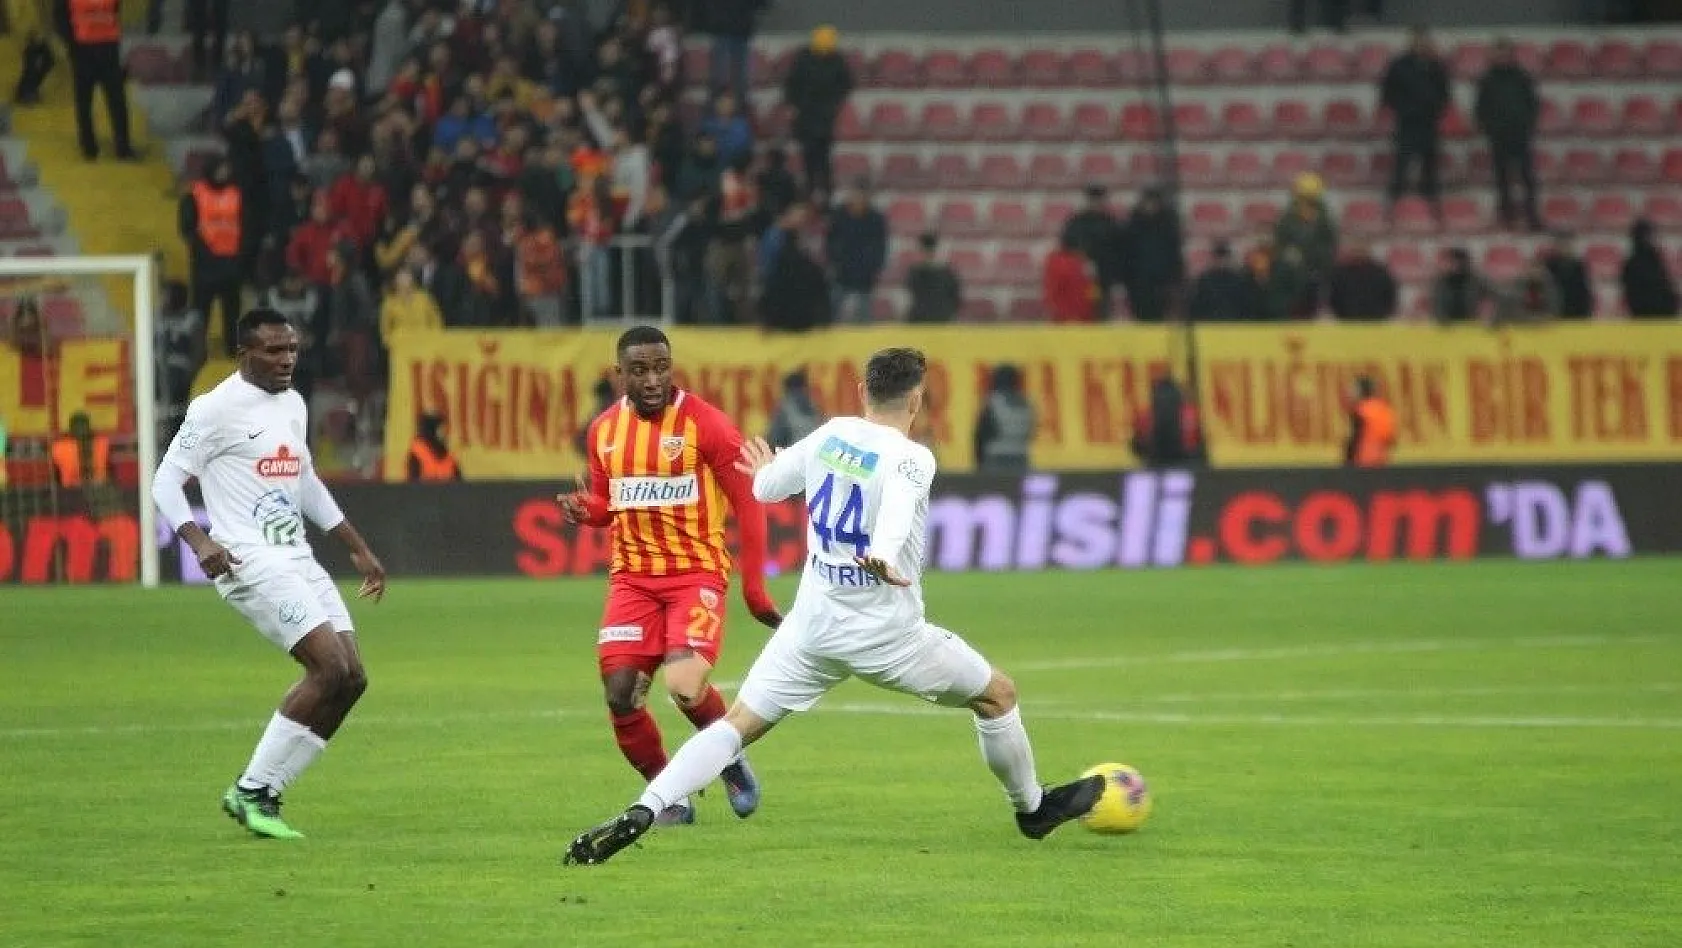 Süper Lig: İ.M. Kayserispor: 1 - Çaykur Rizespor: 0 (Maç sonucu)
